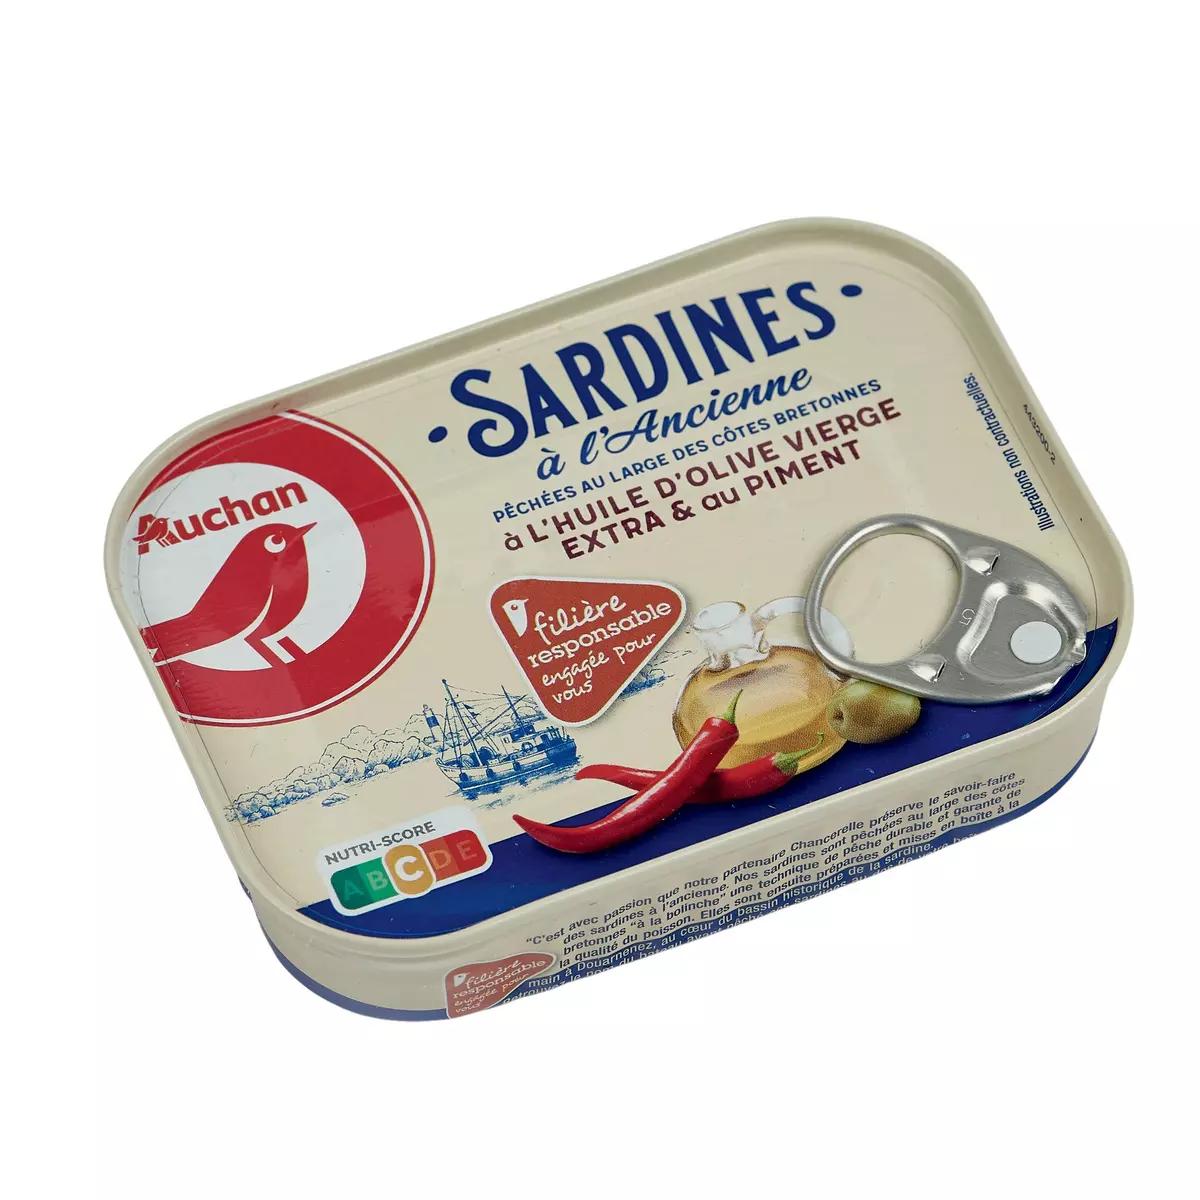 AUCHAN CULTIVONS LE BON sardines à l'ancienne à l'huile d'olive vierge extra & au piment 115g